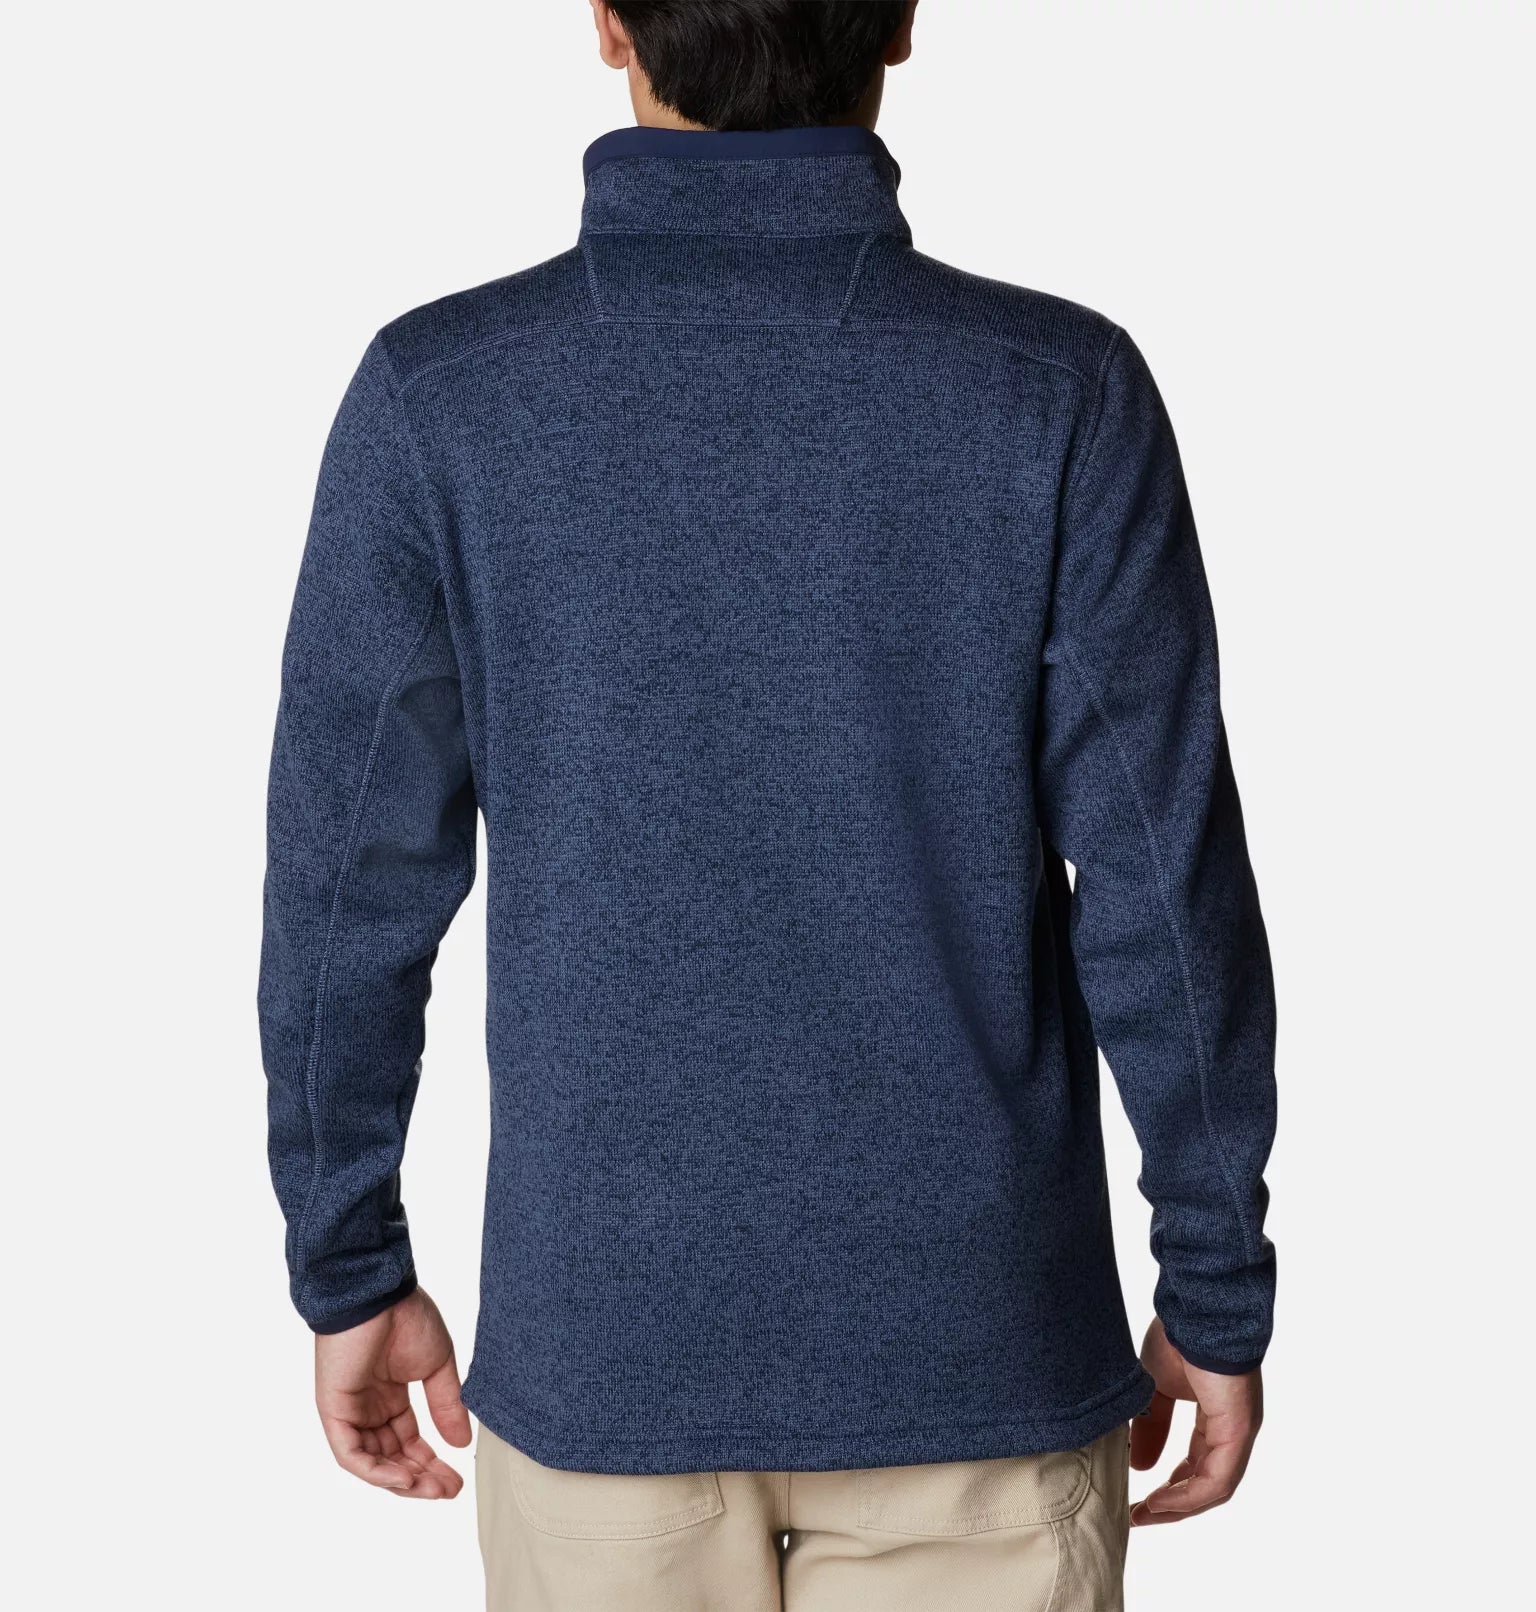 Sweater Weather™ Fleece Full Zip